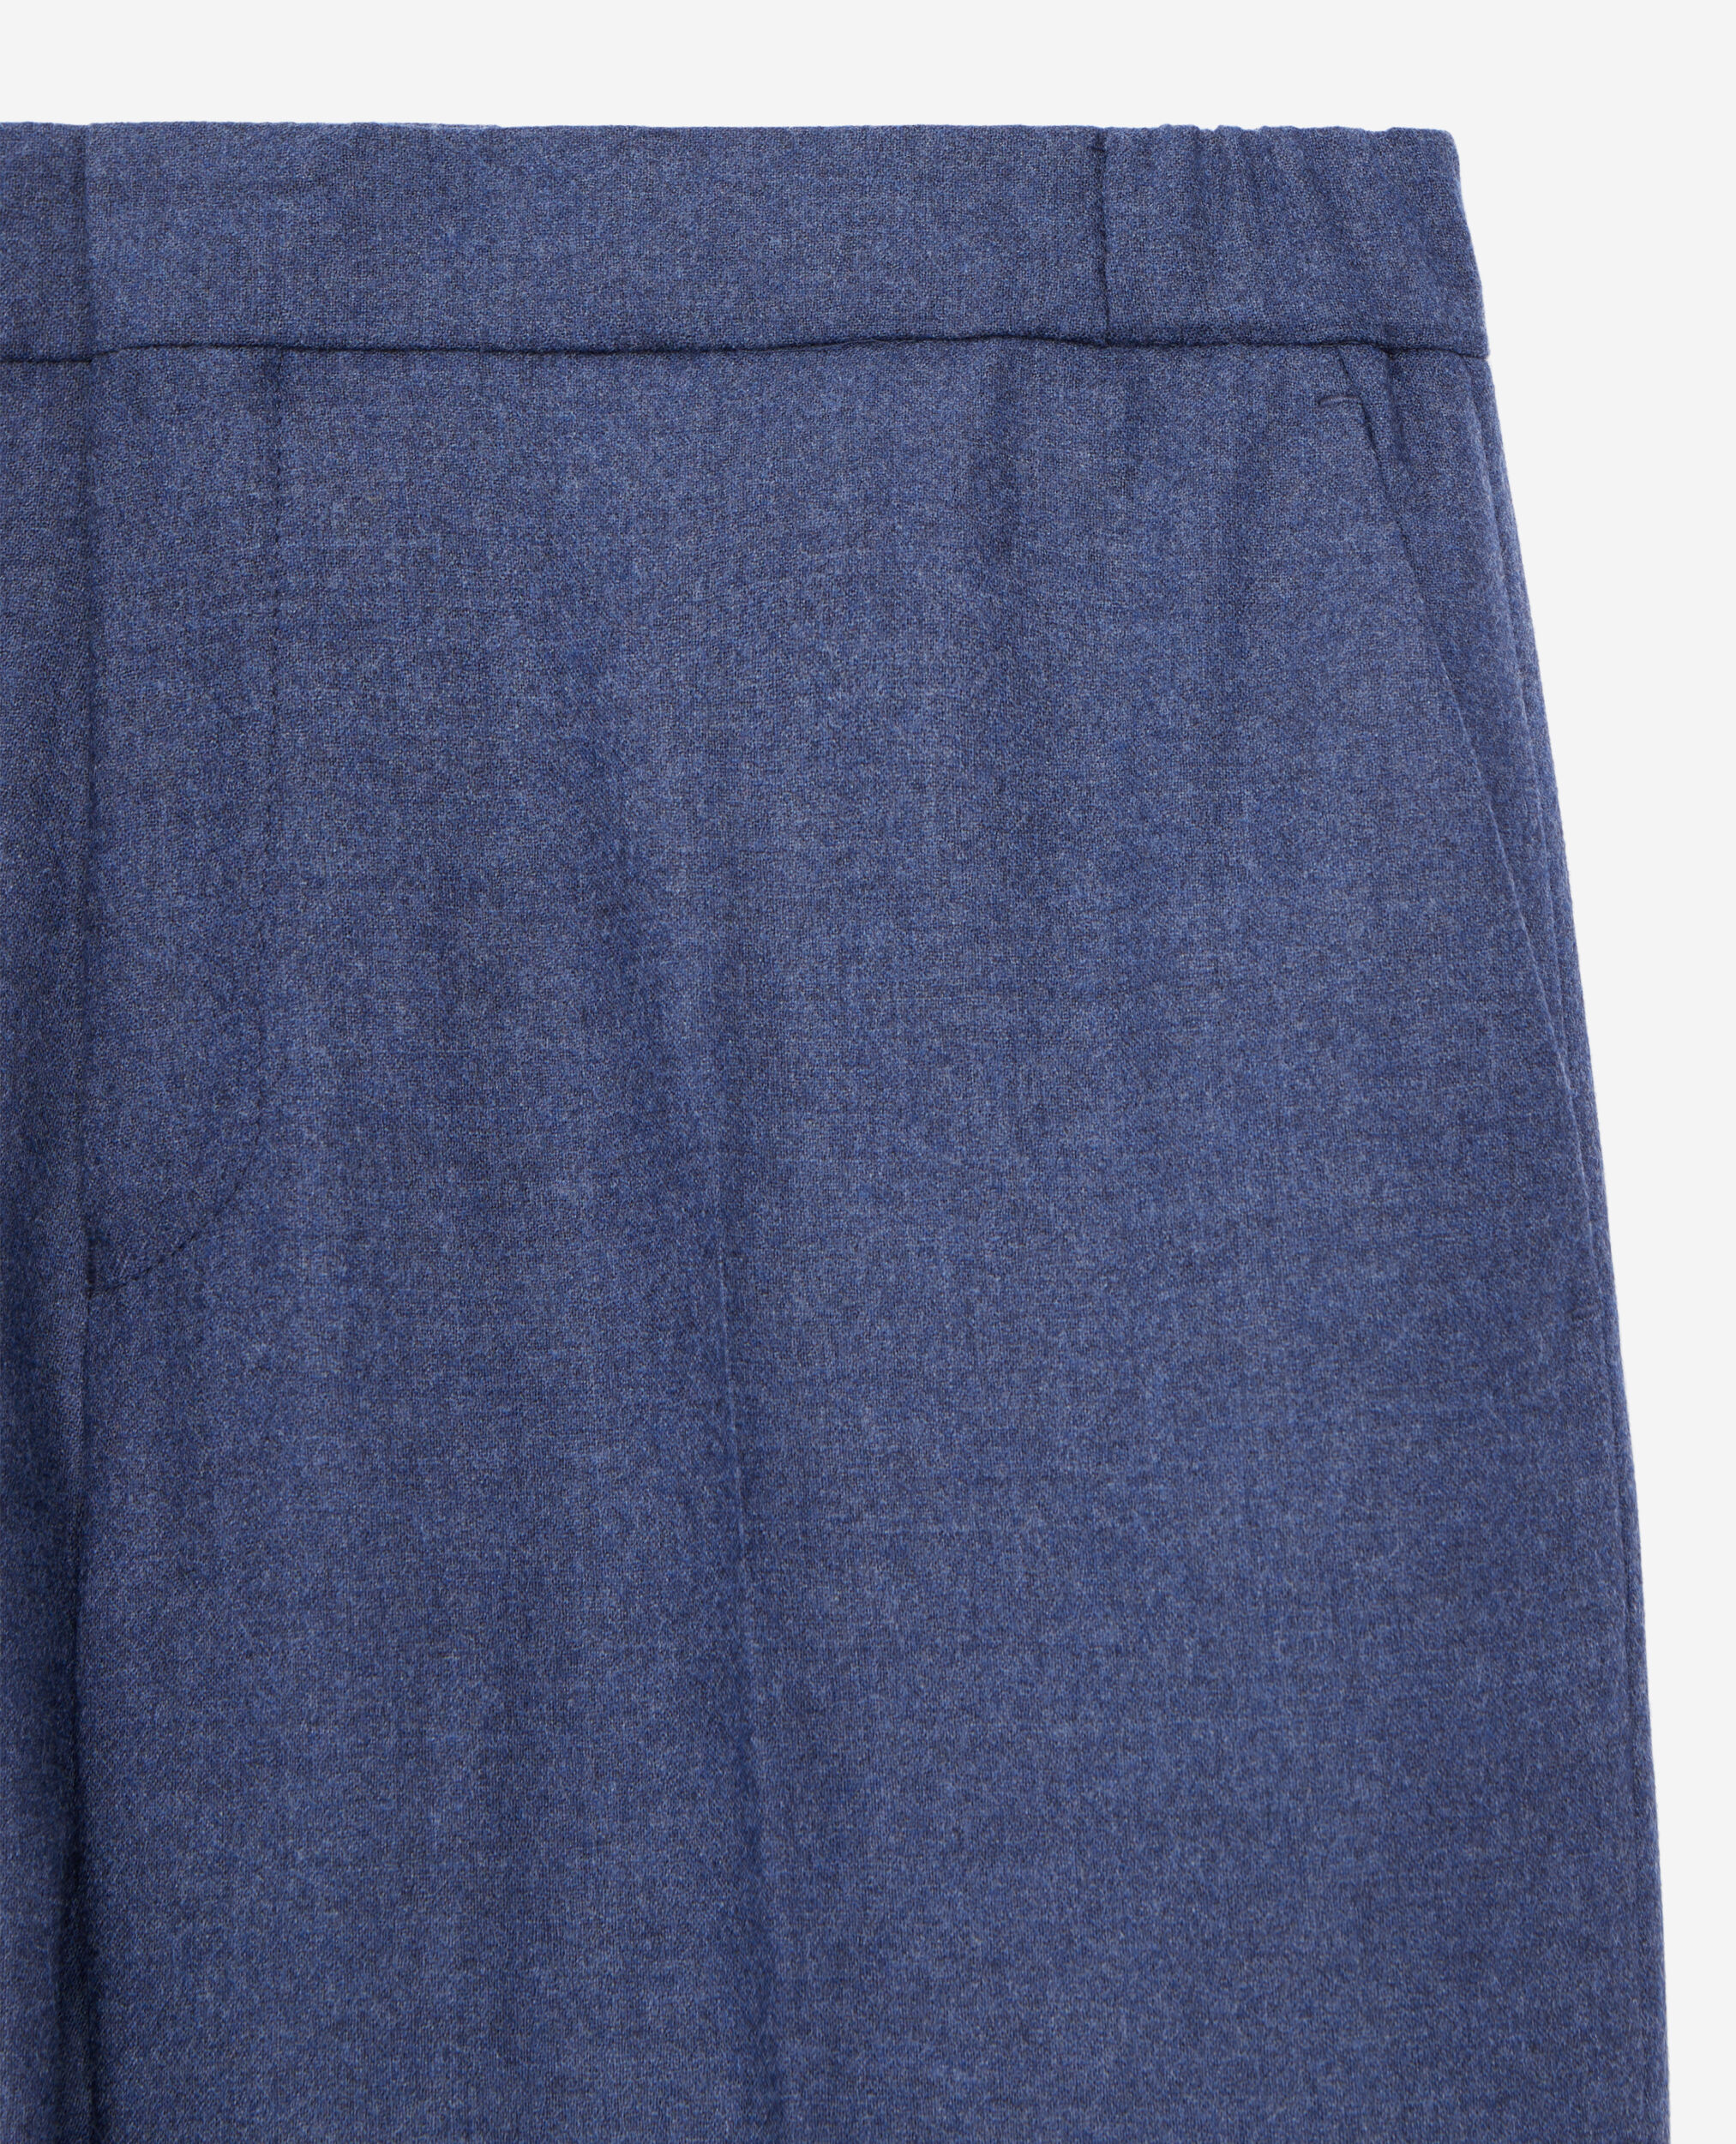 Pantalon bleu en flanelle, BLUE, hi-res image number null